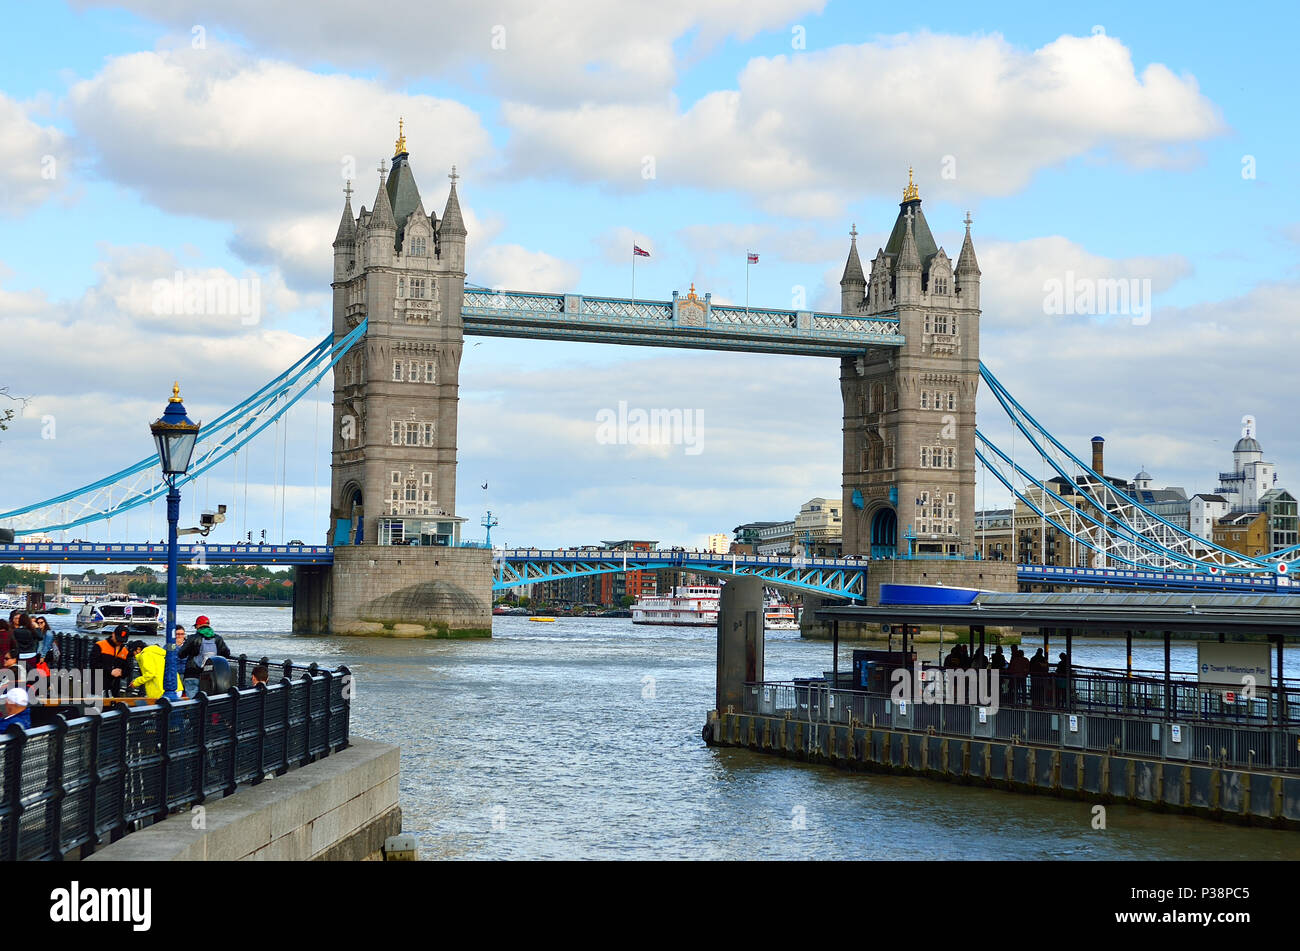 Paysage avec toits de Londres Big Ben, Palais de Westminster, London Eye, Westminster Bridge, Tamise, Londres, Angleterre, Royaume-Uni. Banque D'Images